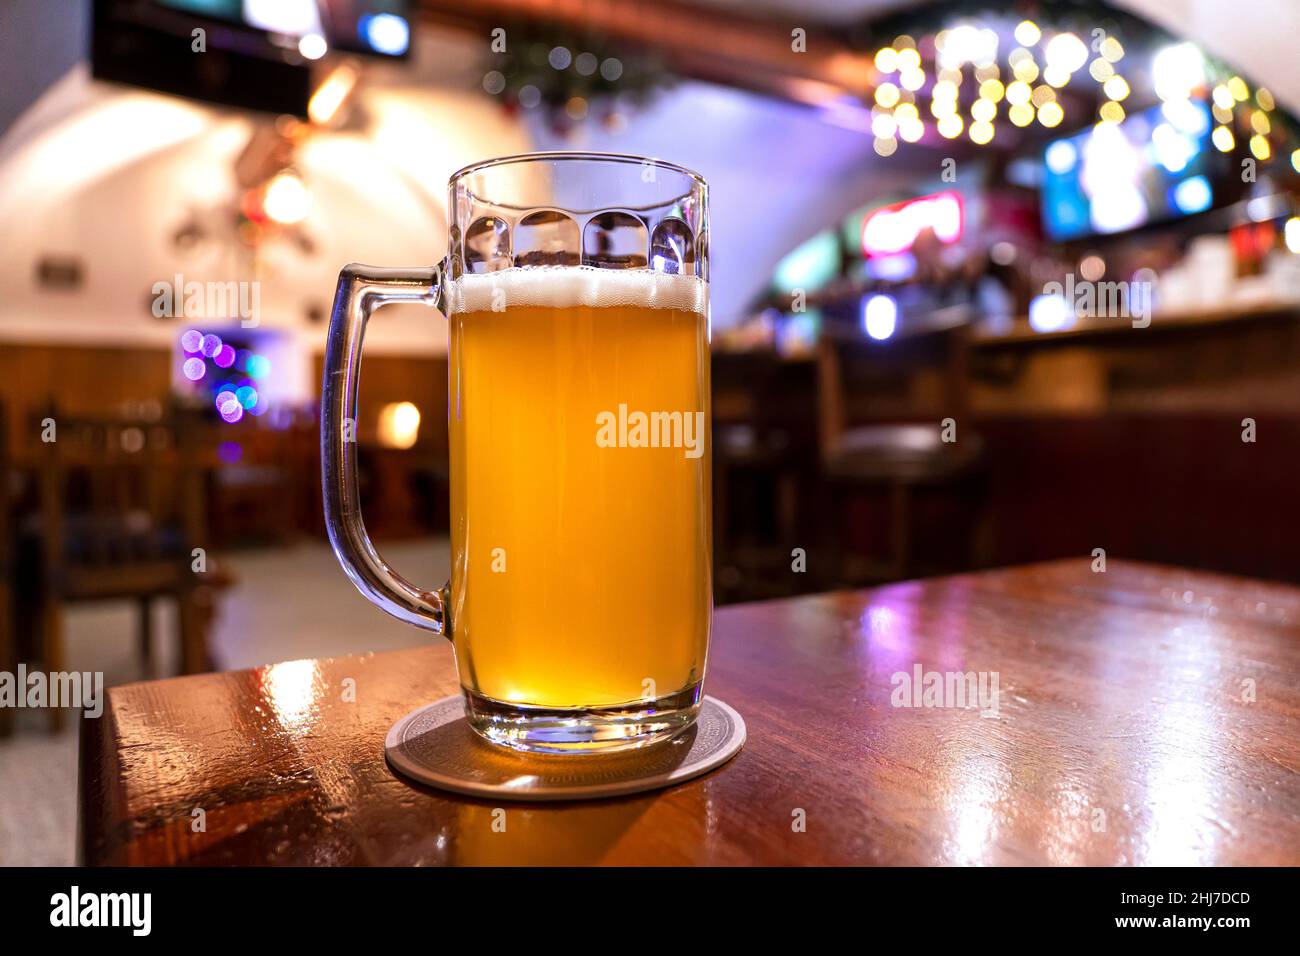 Ruhe. Volles Glas helles Lagerbier Holztisch in warmem Licht der Bar. Alkohol, Unterhaltung, traditionelle Getränke, Oktoberfest-Atmosphärenkonzept. Stockfoto